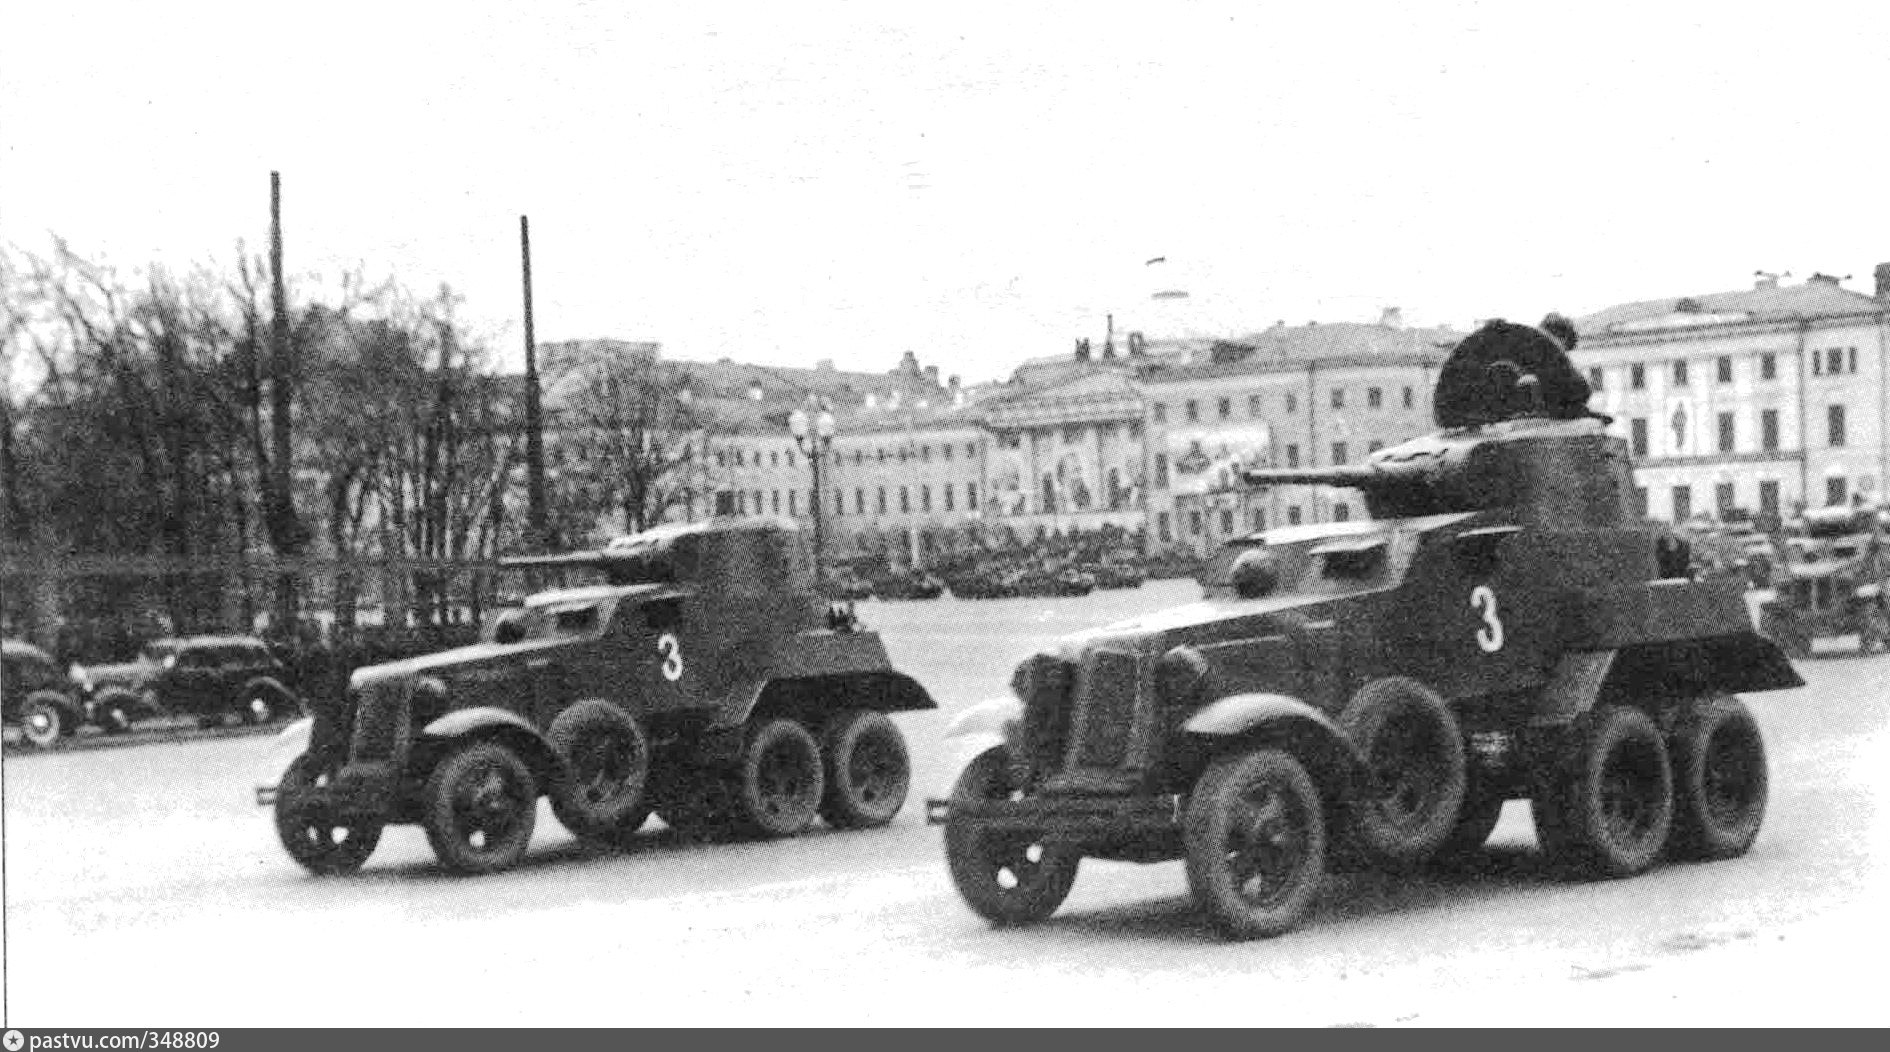 Начало ба. Ба-10 бронеавтомобиль. Бронеавтомобили РККА ба-10. Бронеавтомобиль ба-10 1941. Советский бронеавтомобиль ба-10.